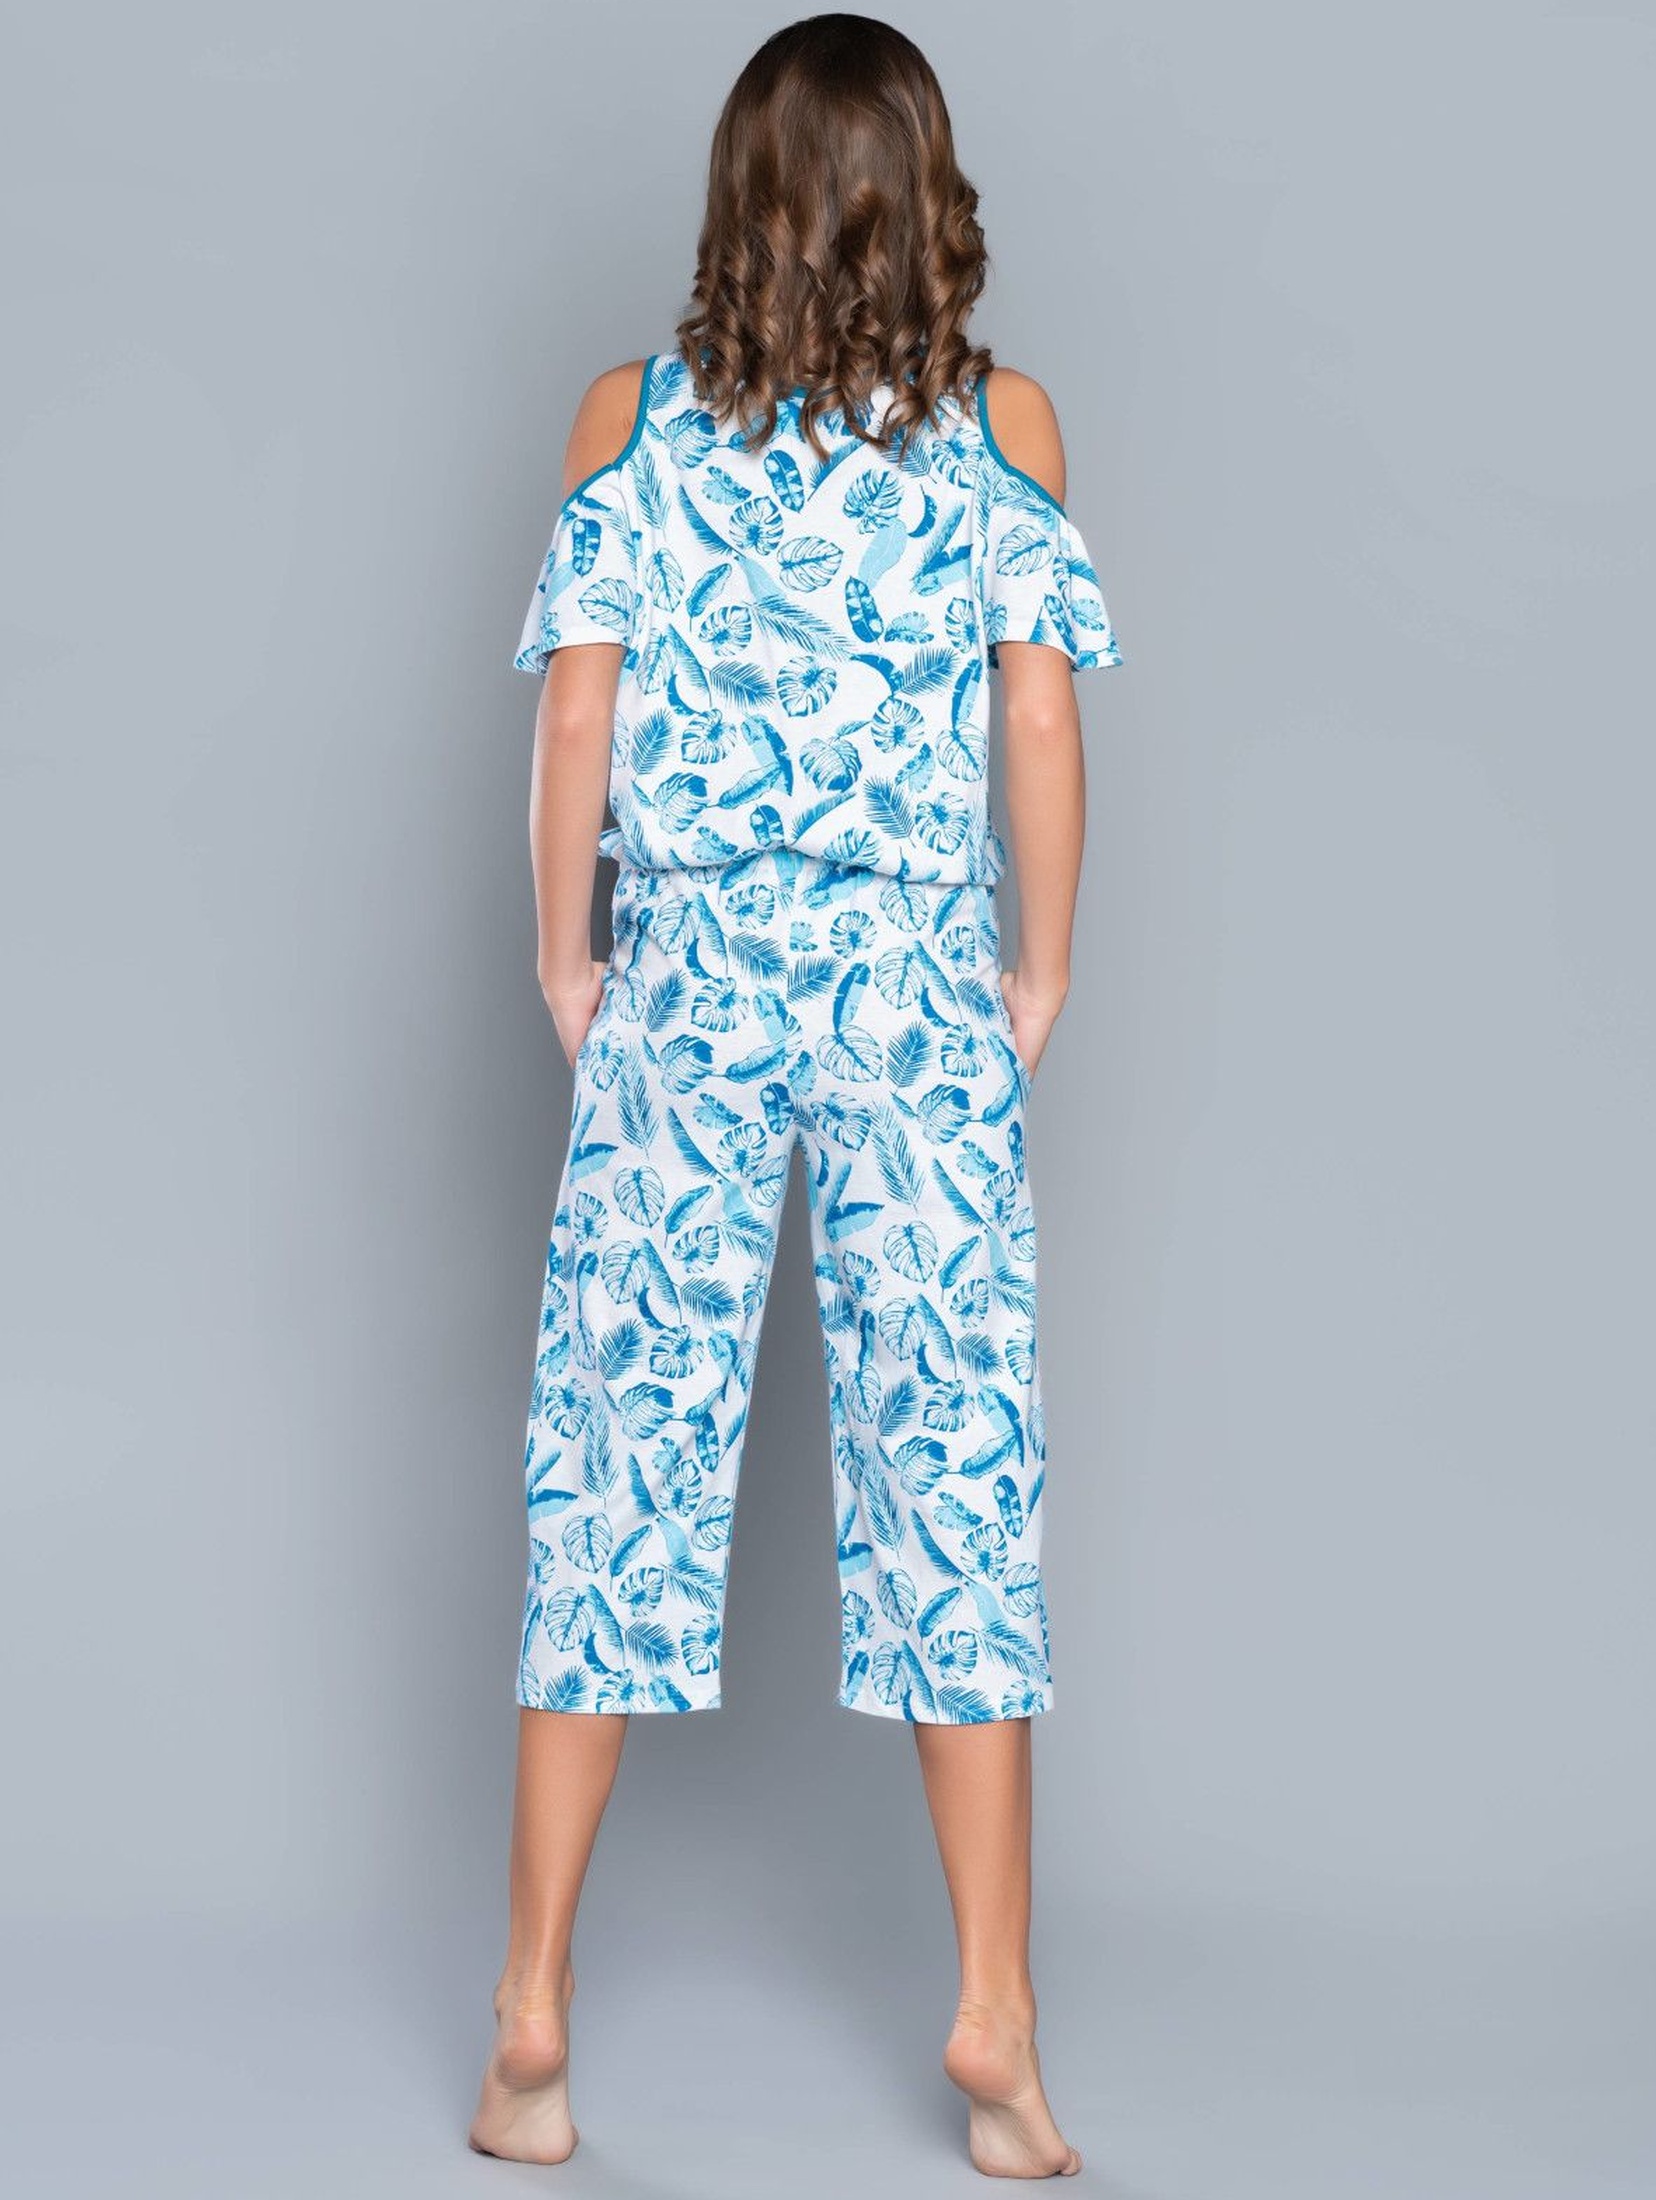 Biała jednoczęściowa piżama damska w niebieskie listki z odkrytymi ramionami - spodnie 3/4 nogawka